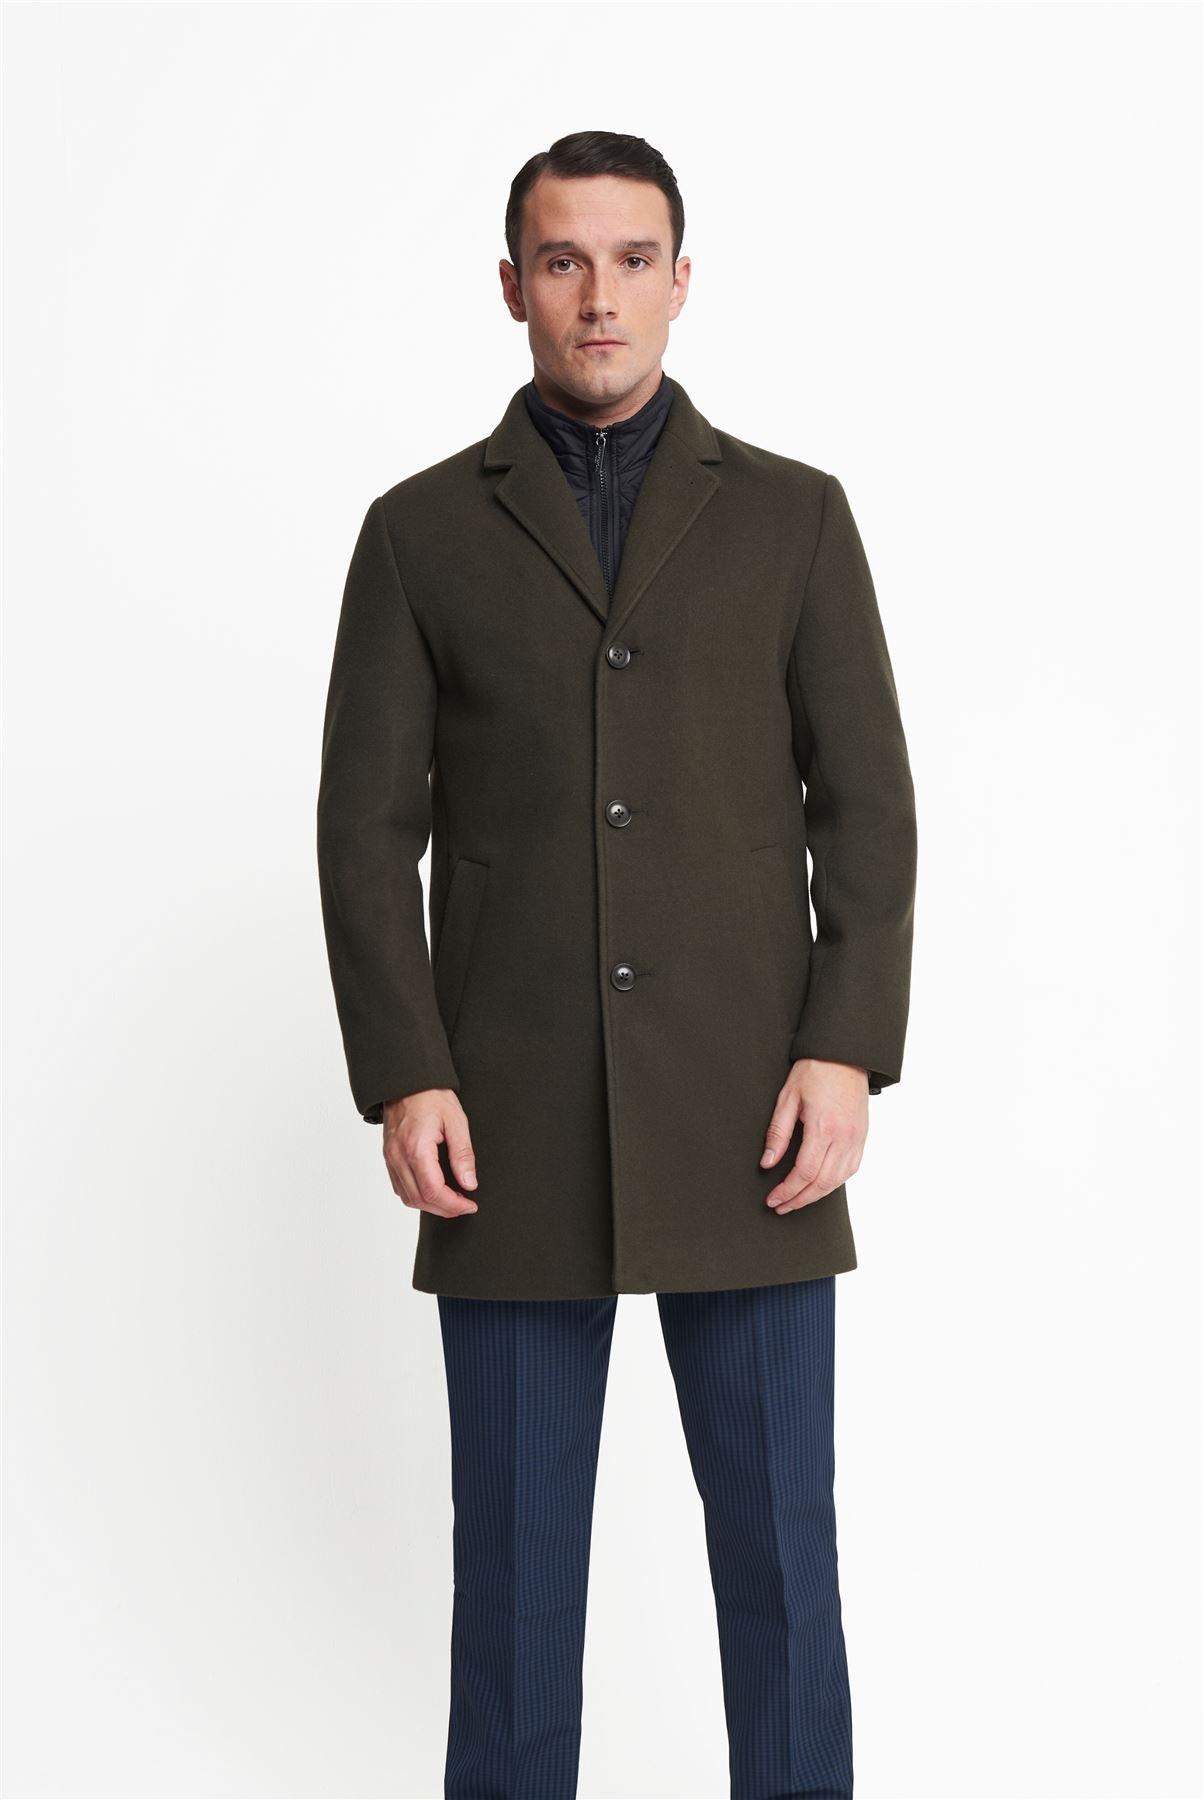 Johan Пальто со вставками Harry Brown London, хаки johan пальто со вставками harry brown london серый